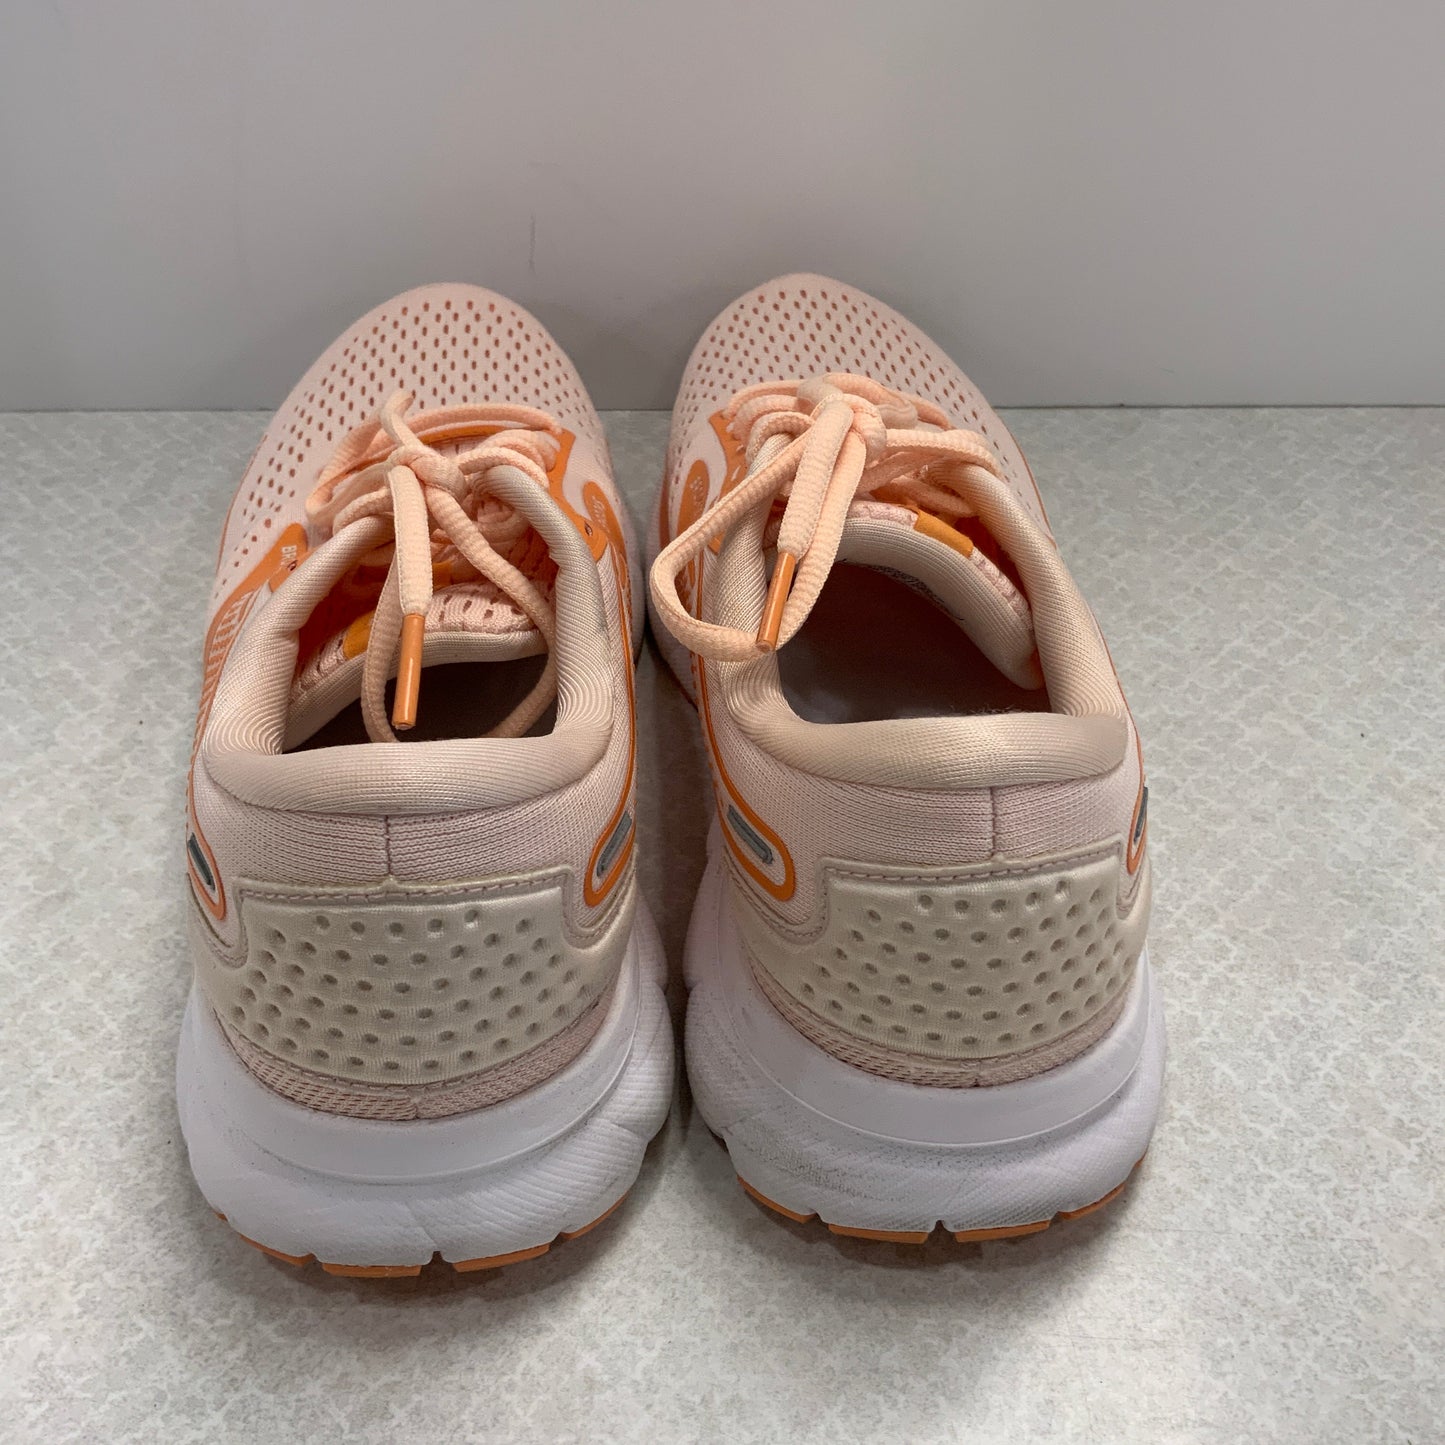 Orange Shoes Athletic Brooks, Size 8